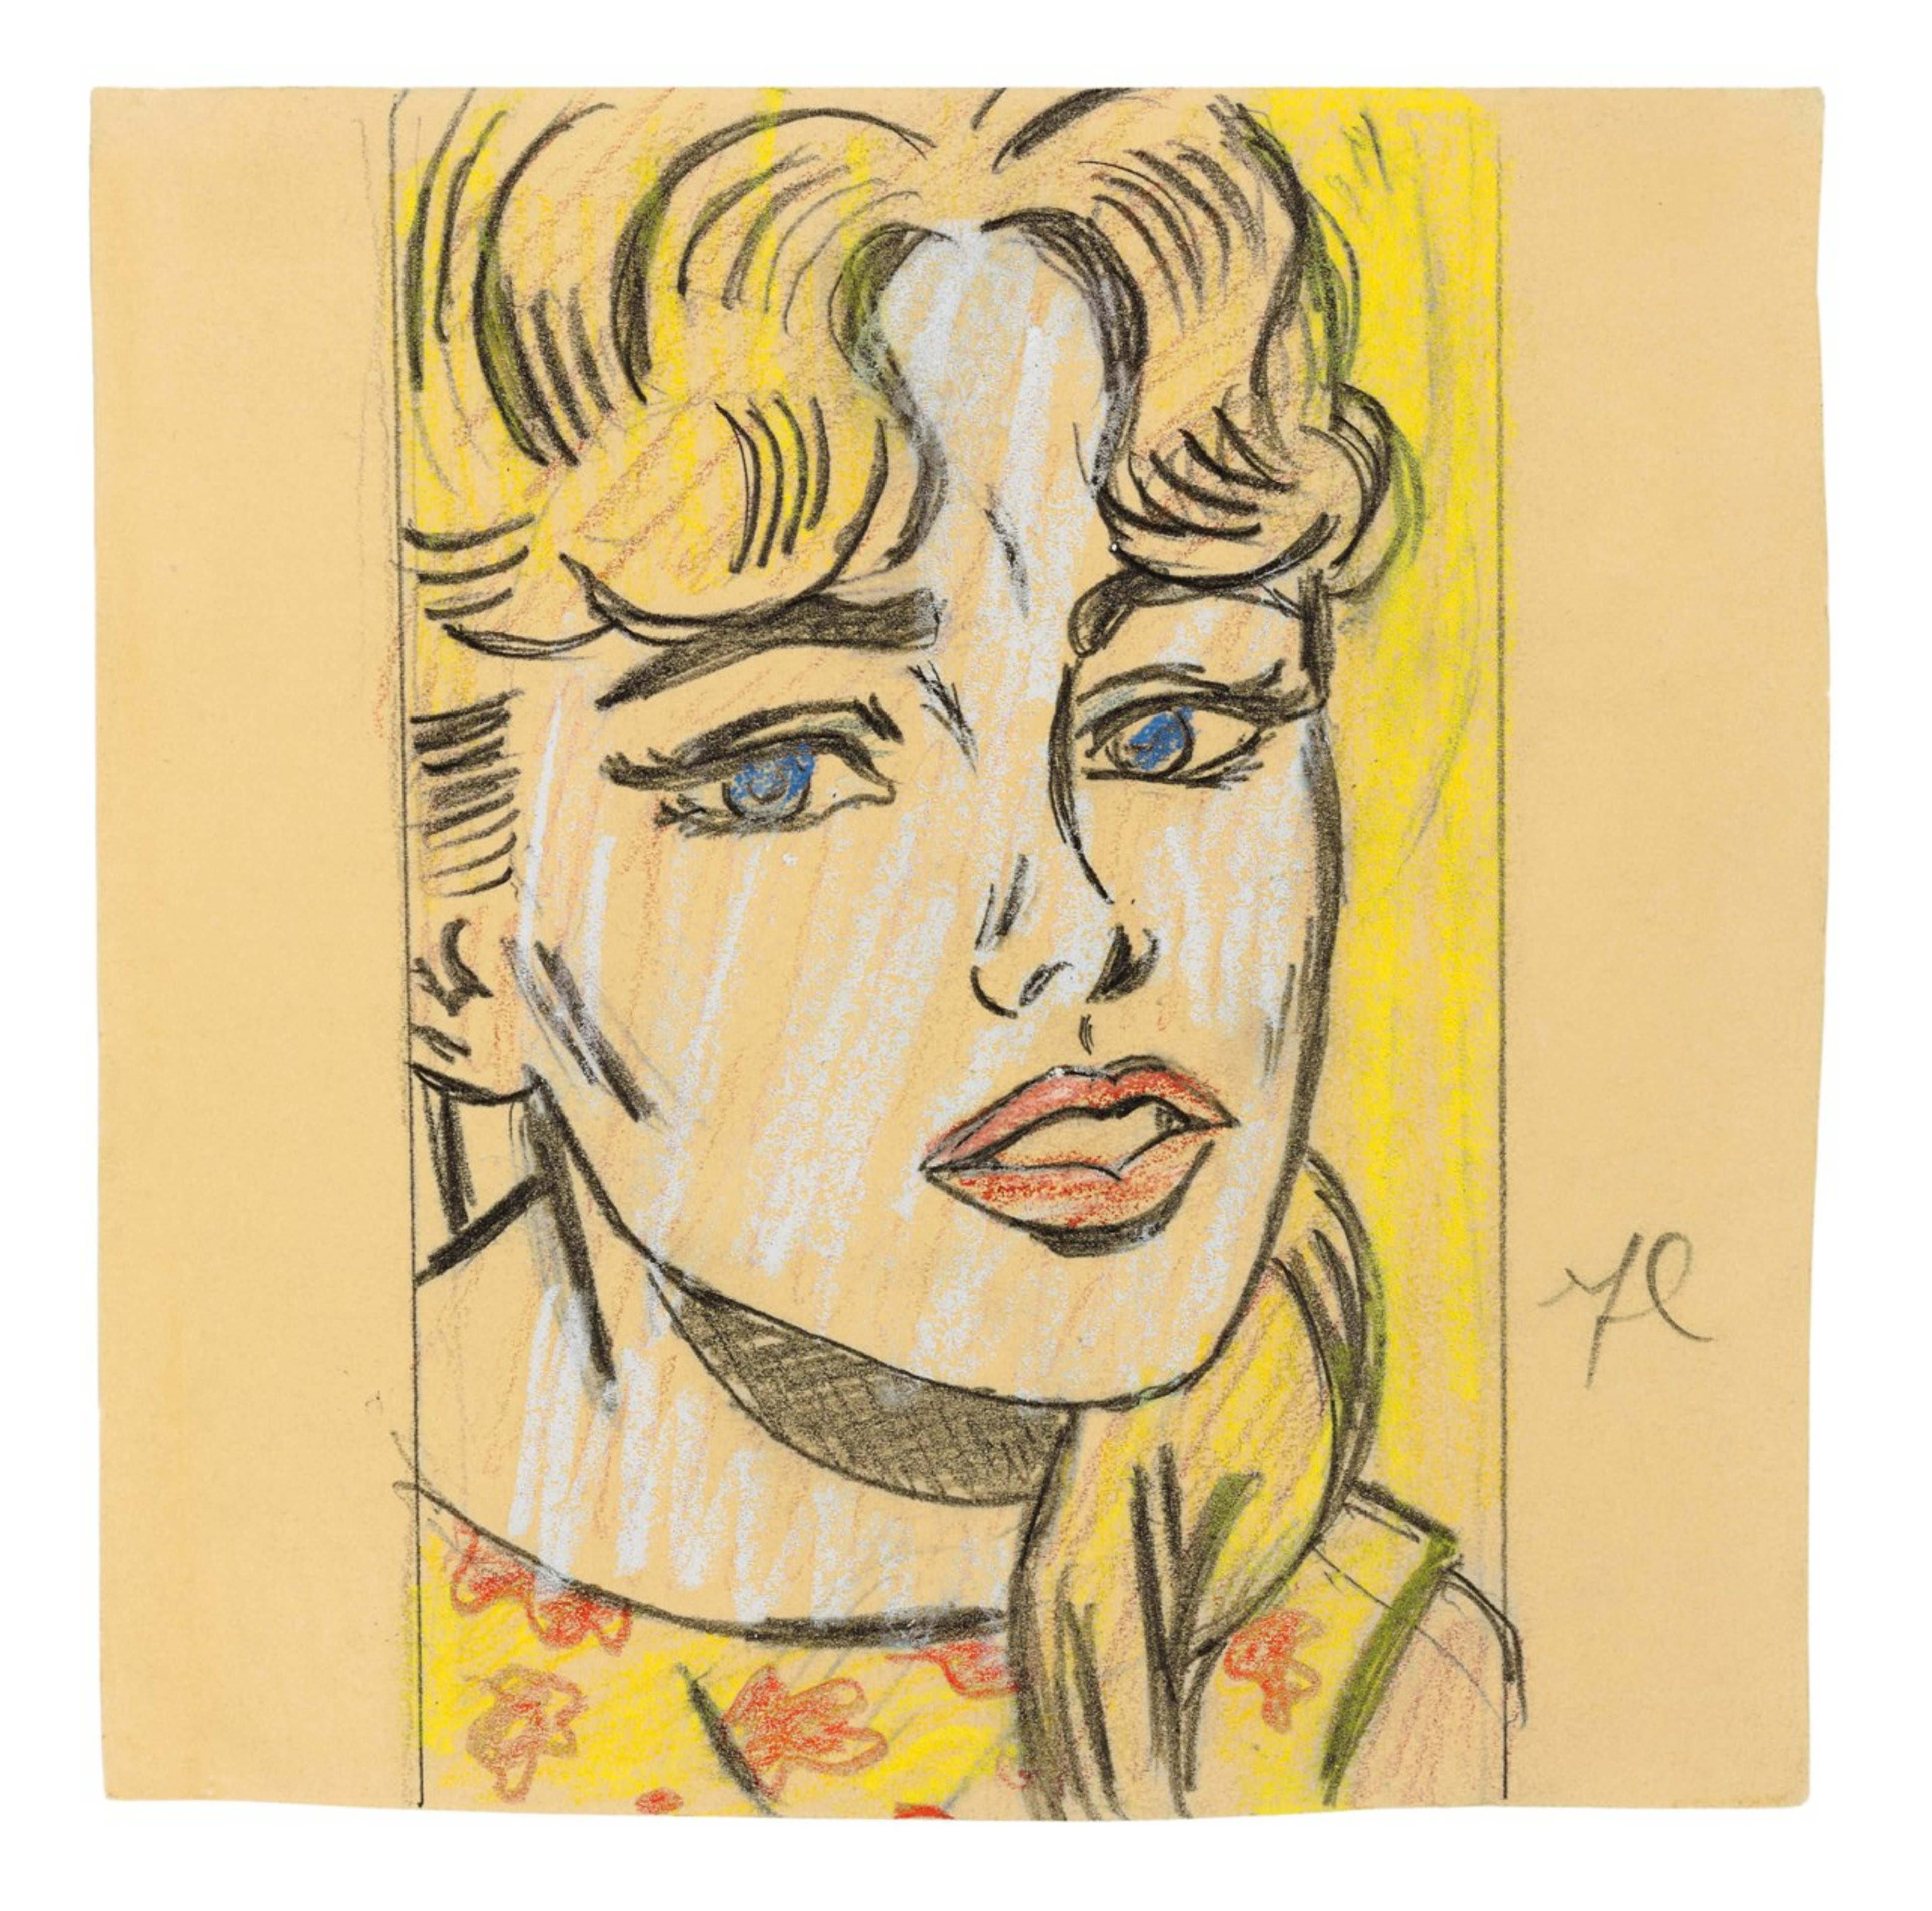 Anxious Girl (study) by Roy Lichtenstein 